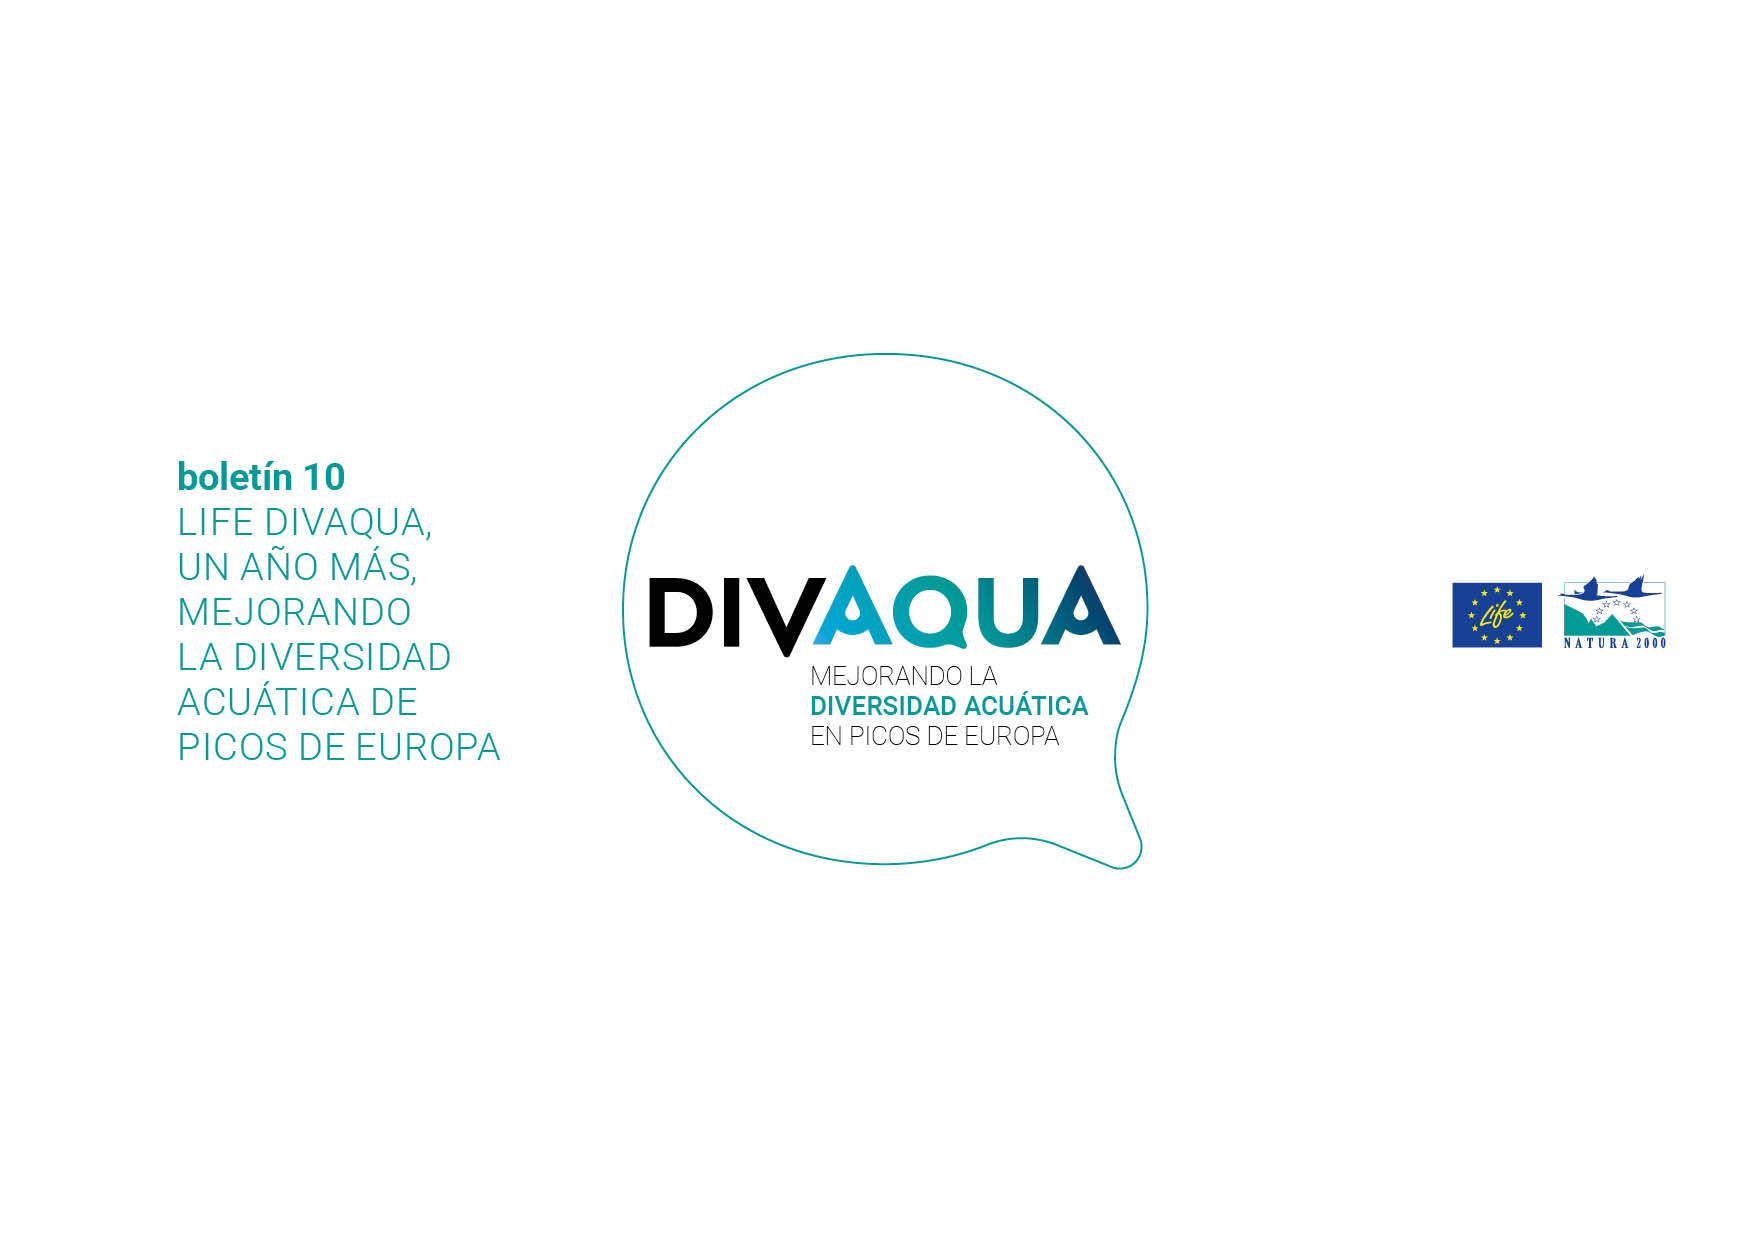 Boletín 10 LIFE DIVAQUA, un año más mejorando la diversidad acuática de Picos de Europa - portada